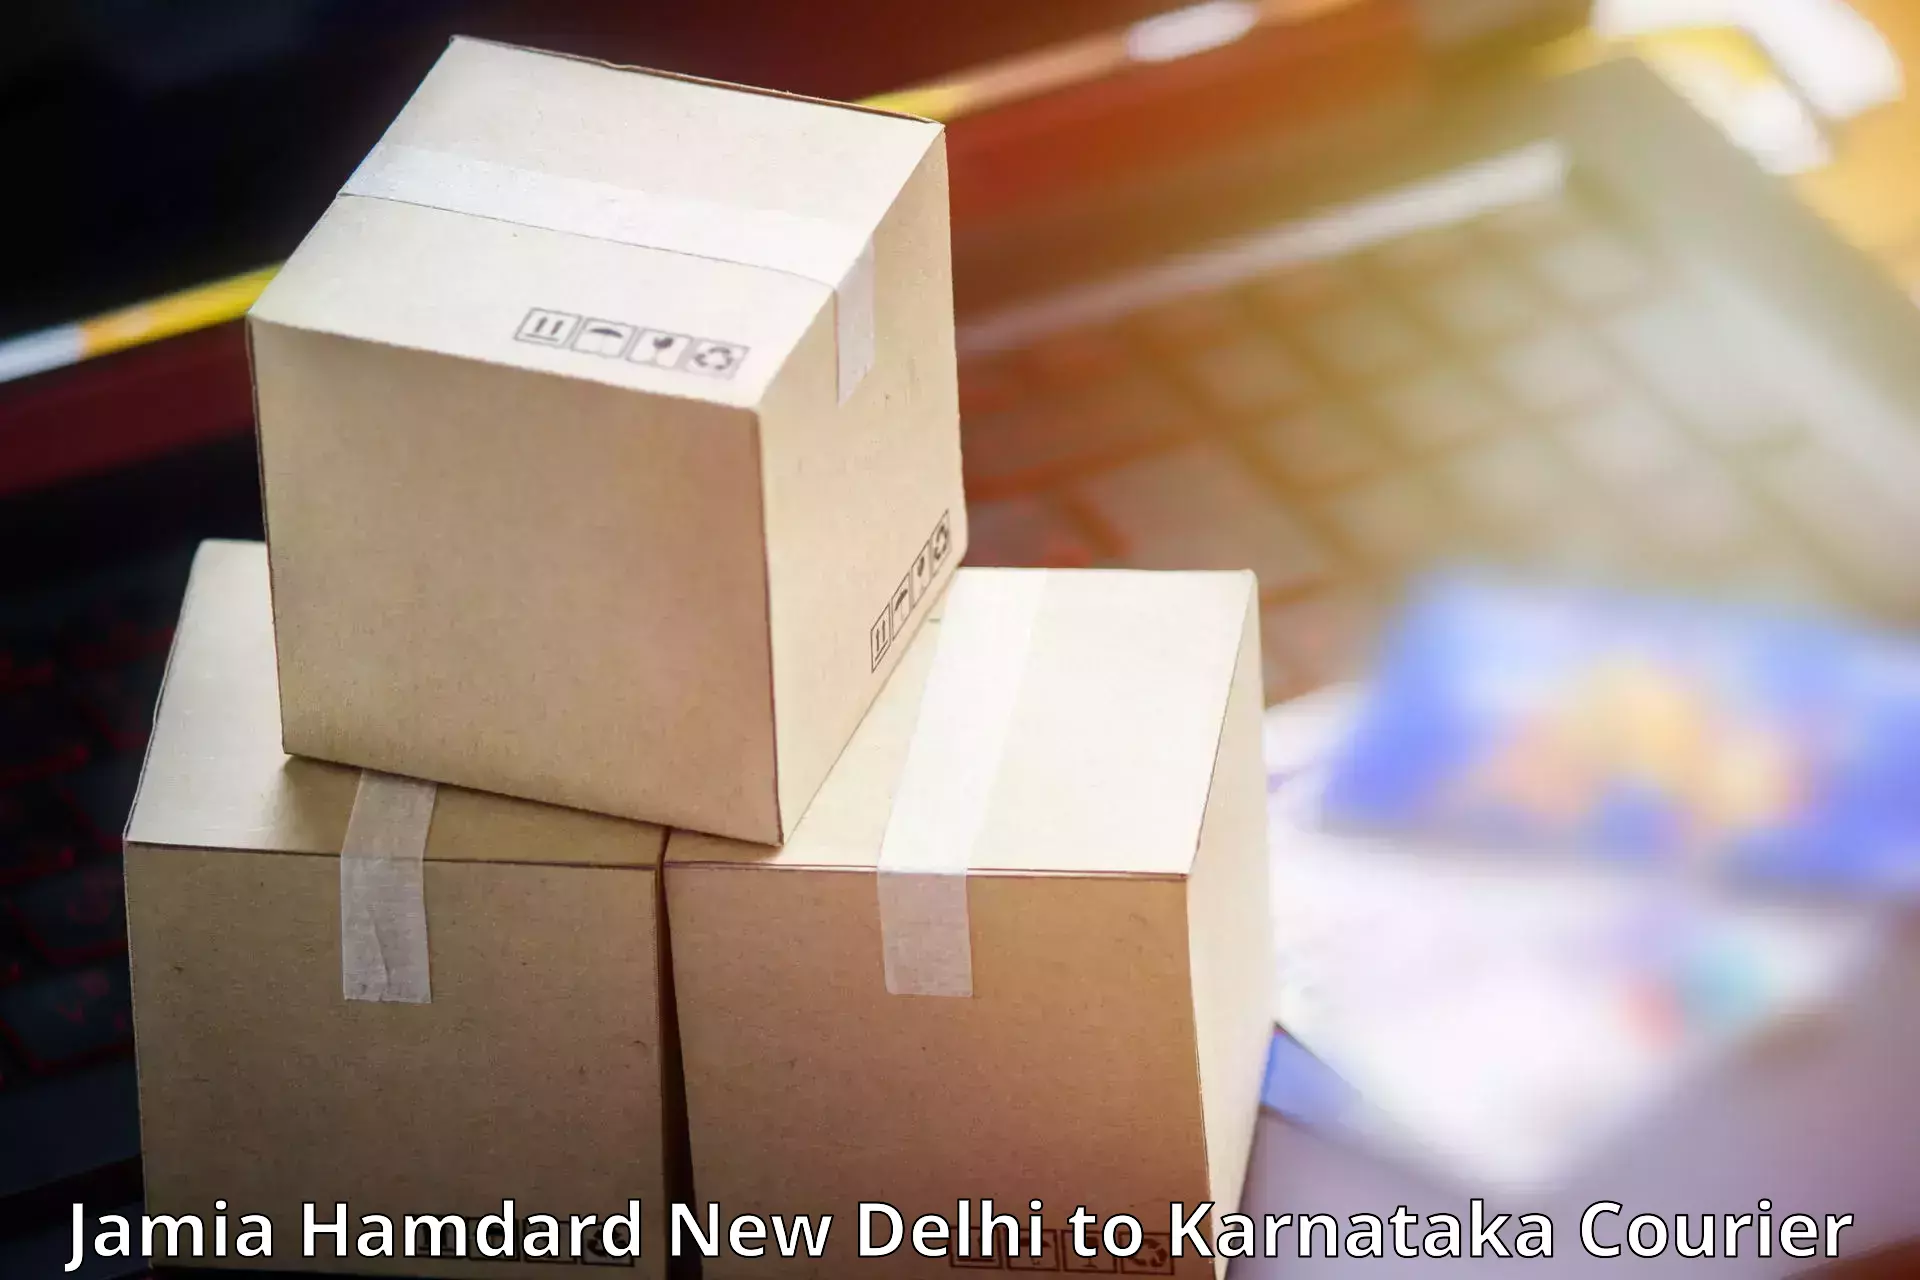 Cost-effective freight solutions Jamia Hamdard New Delhi to Mandya